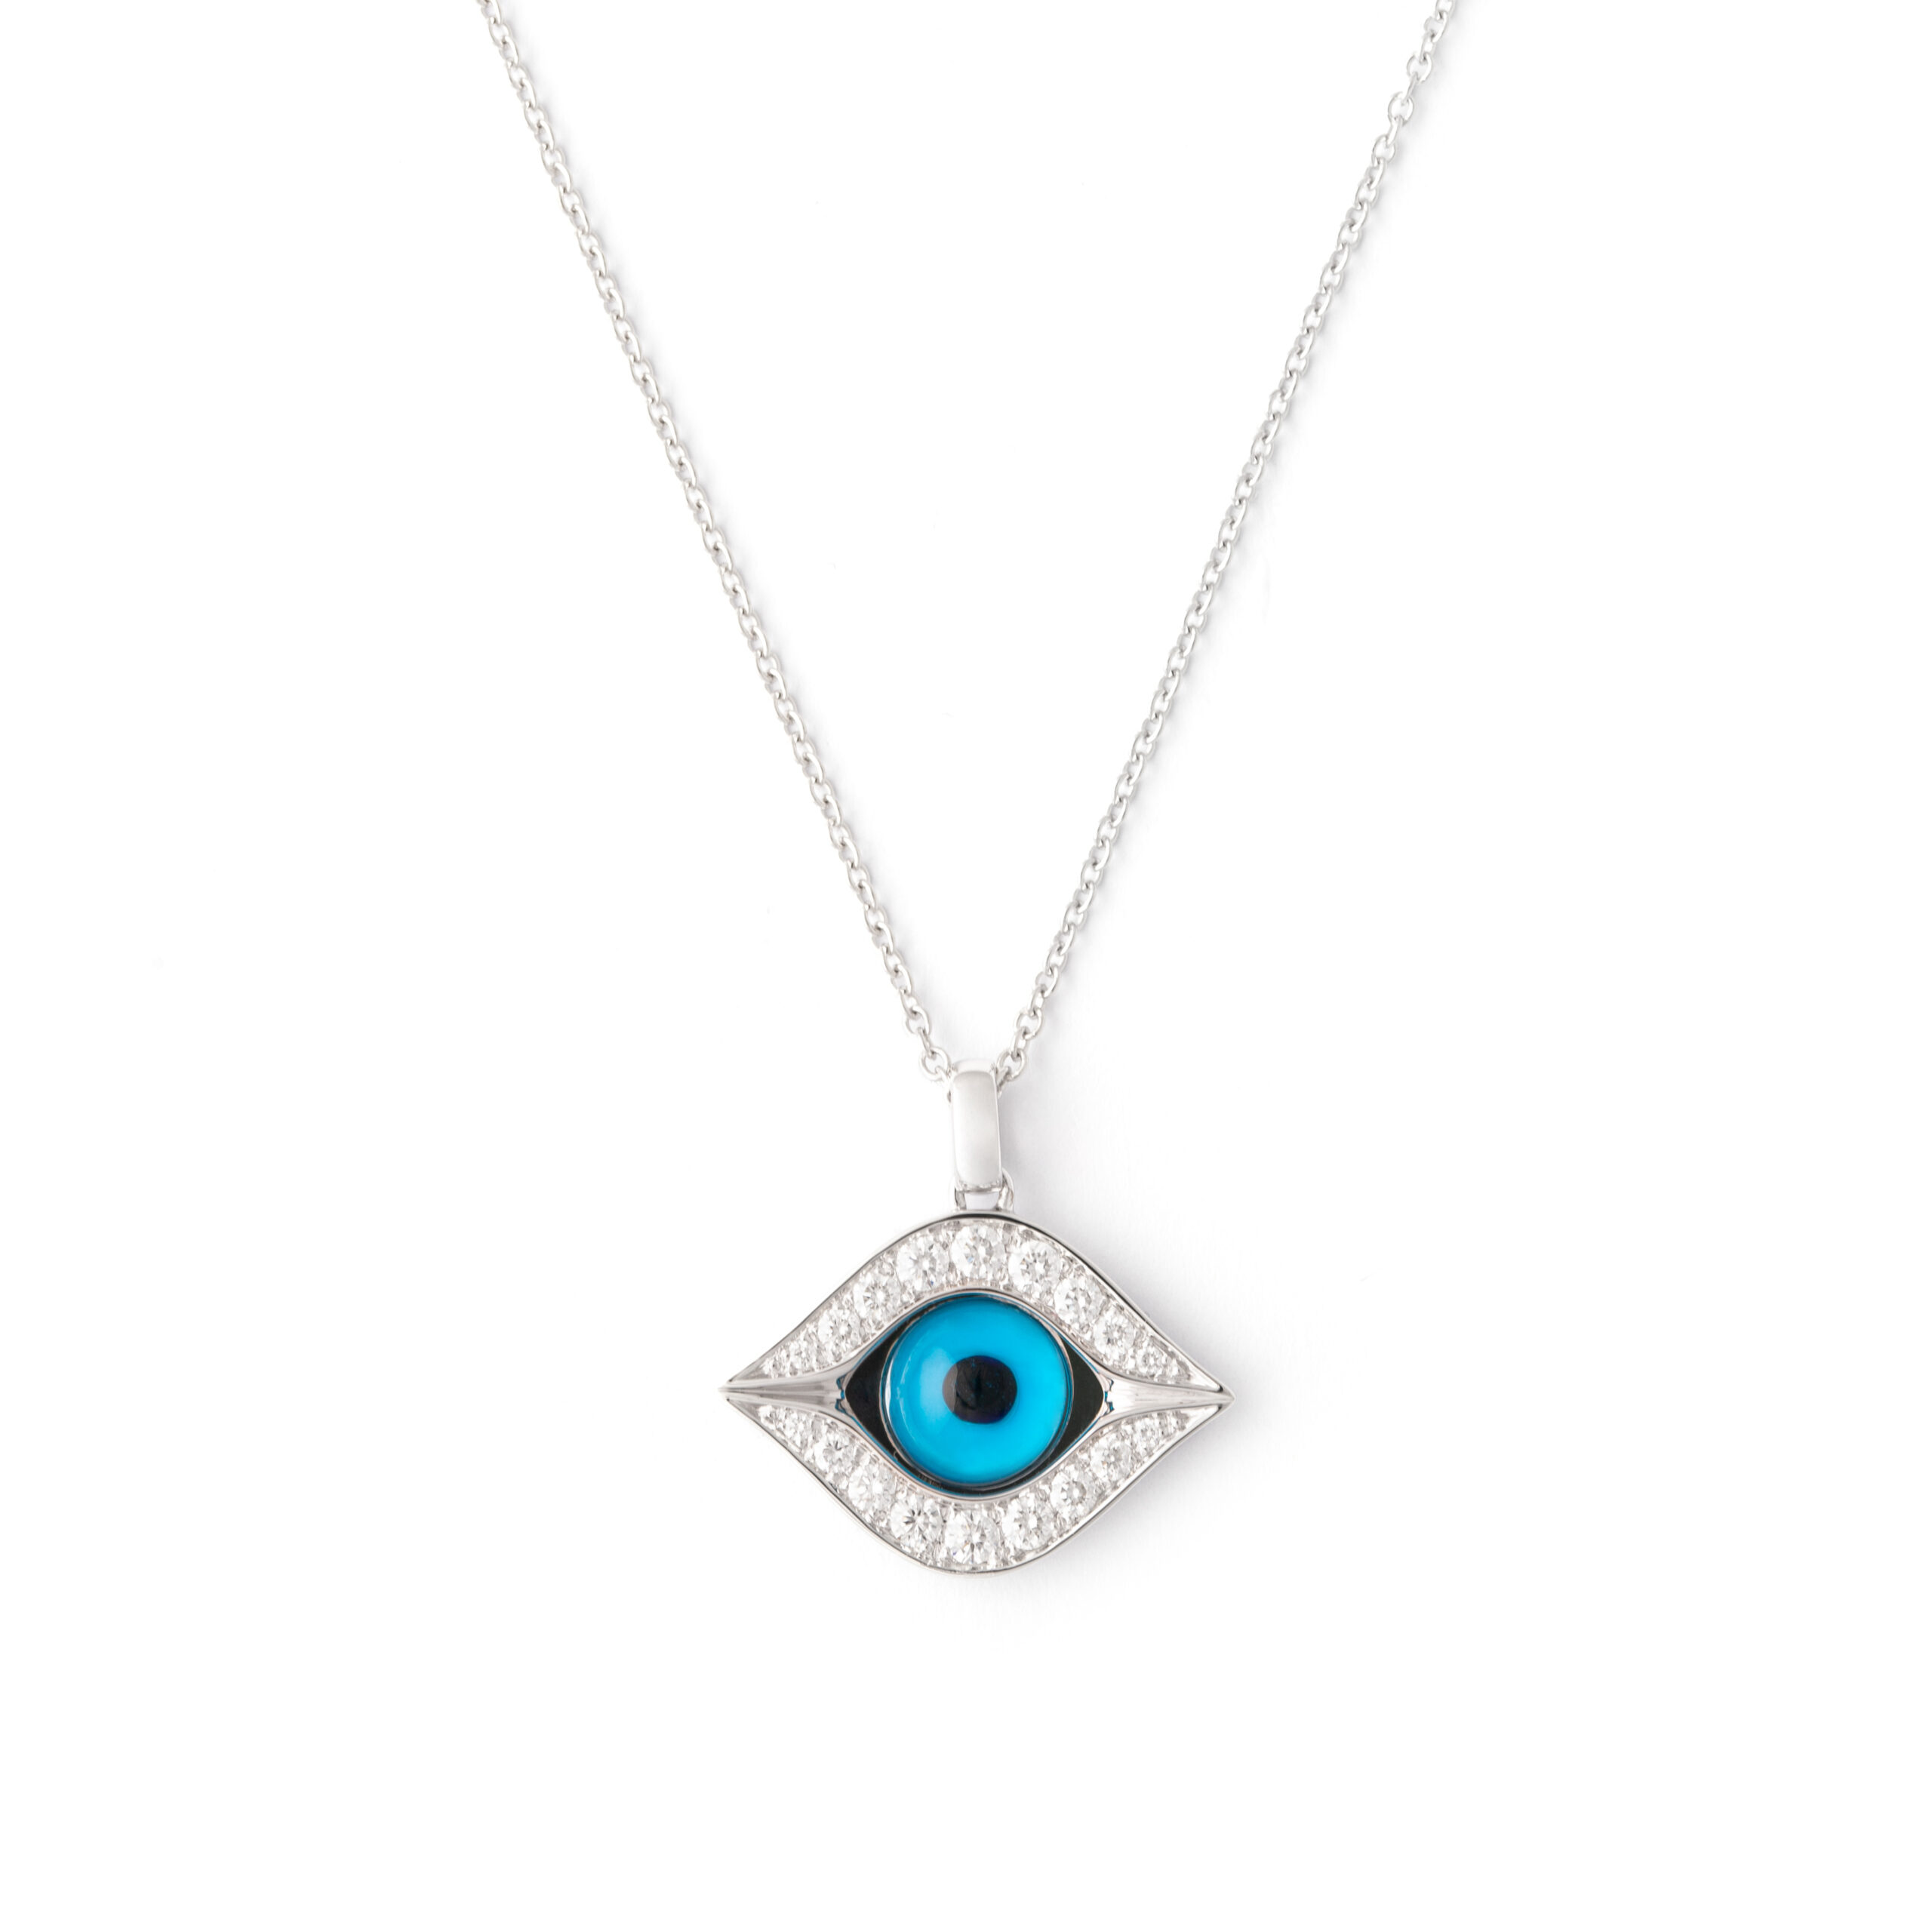 20l765_3-diamonds-necklace-eye-white-gold-18k-pendant